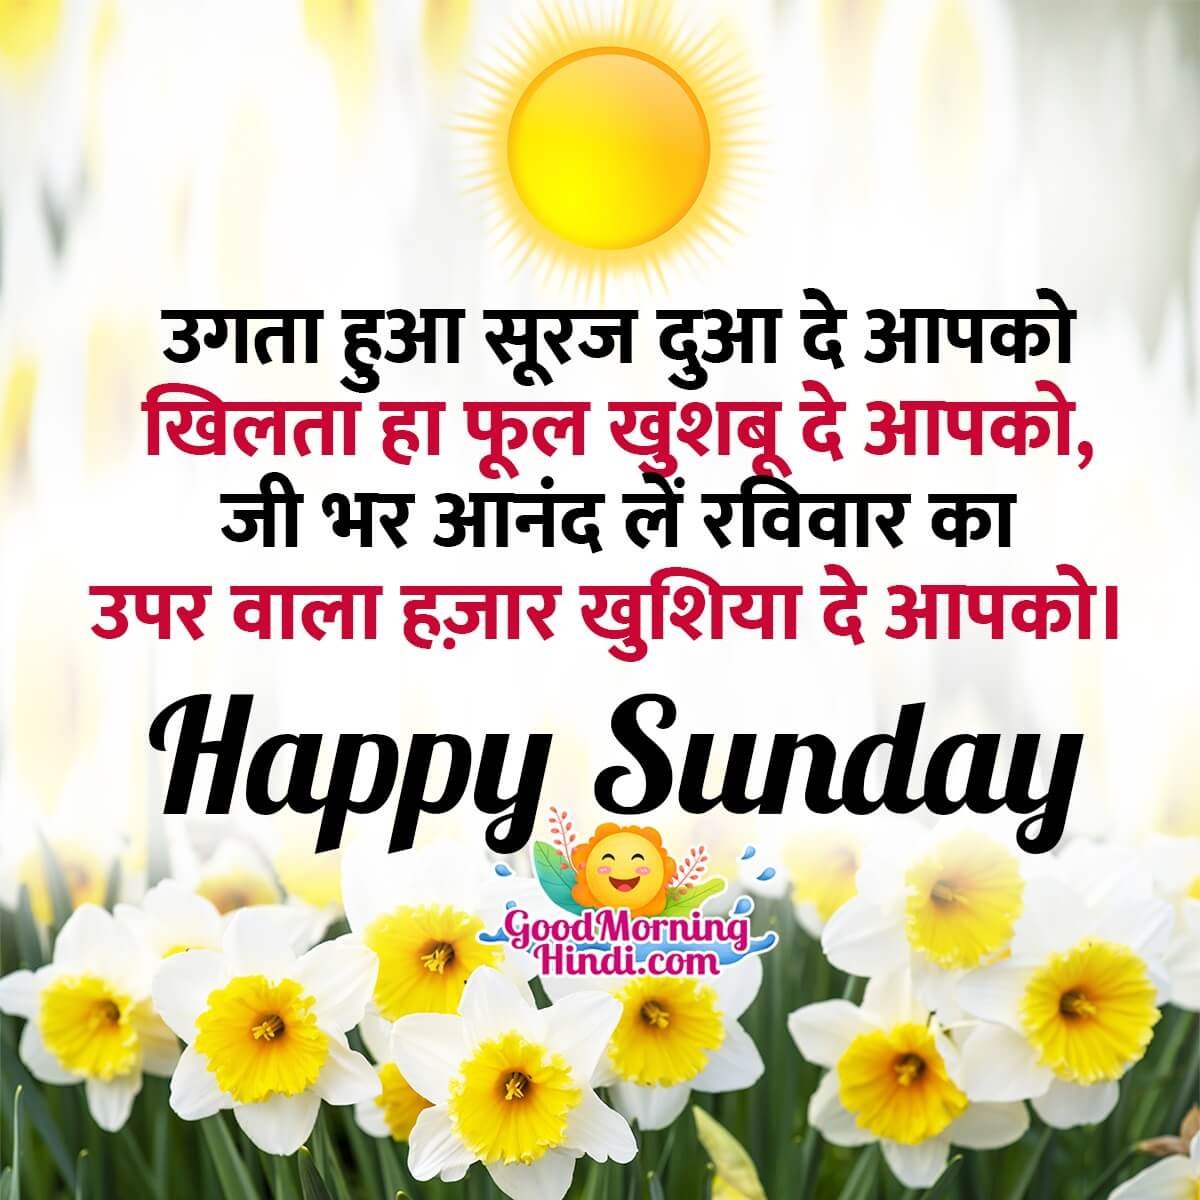 Happy Sunday Shayari Images In Hindi - Good Morning Wishes ...